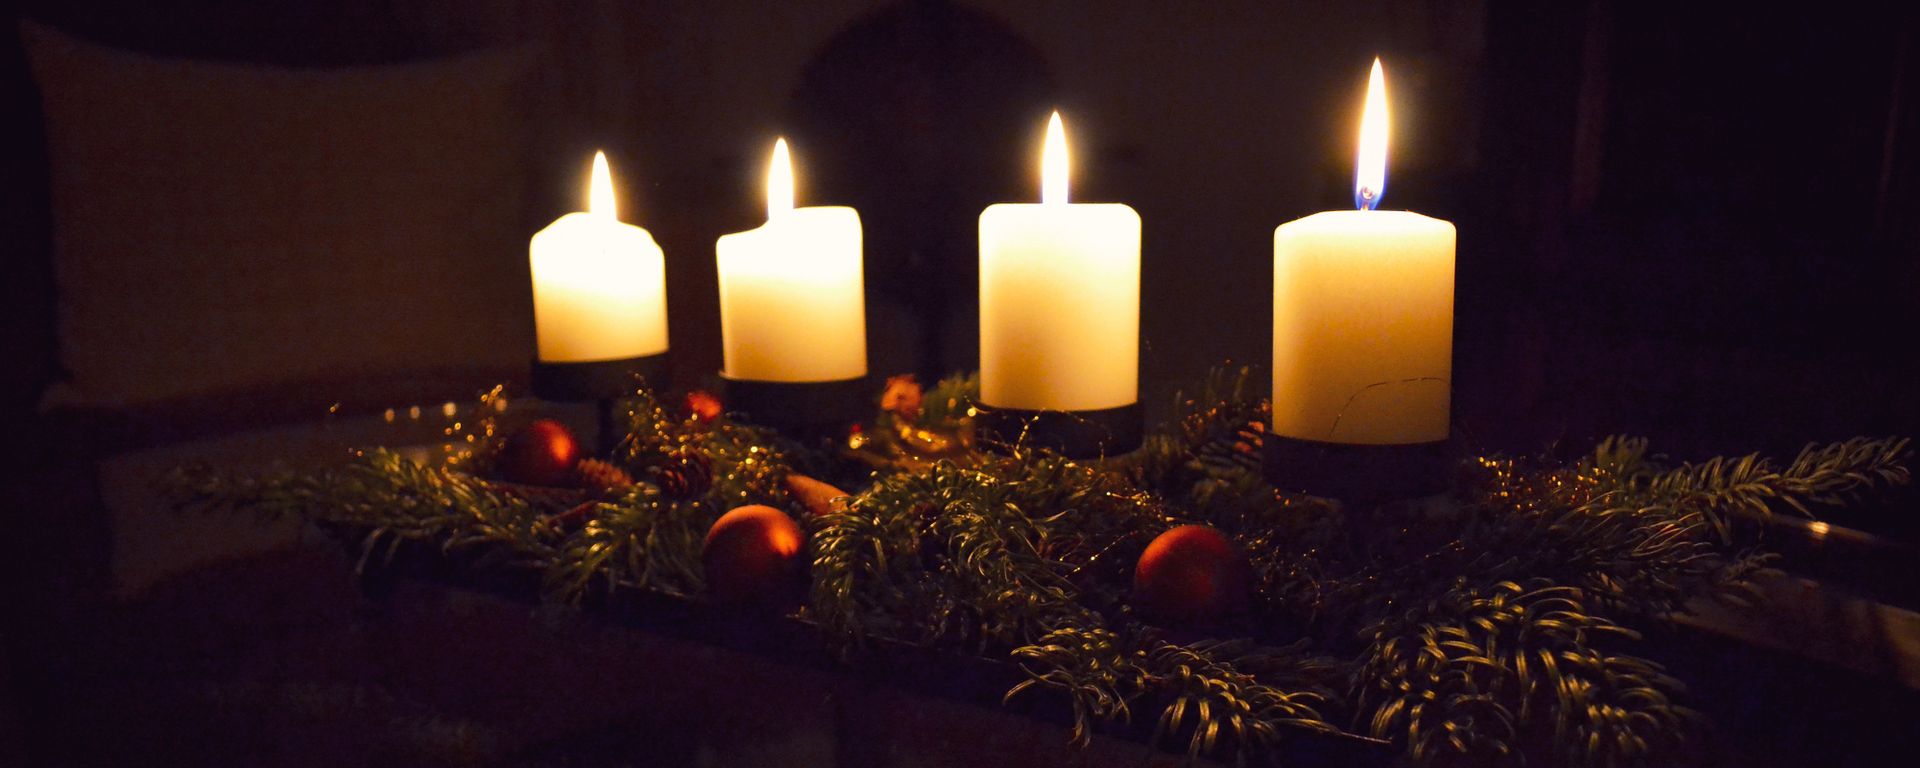 Weihnachtliche Stimmung mit Kerzen. Foto: Szymiczek